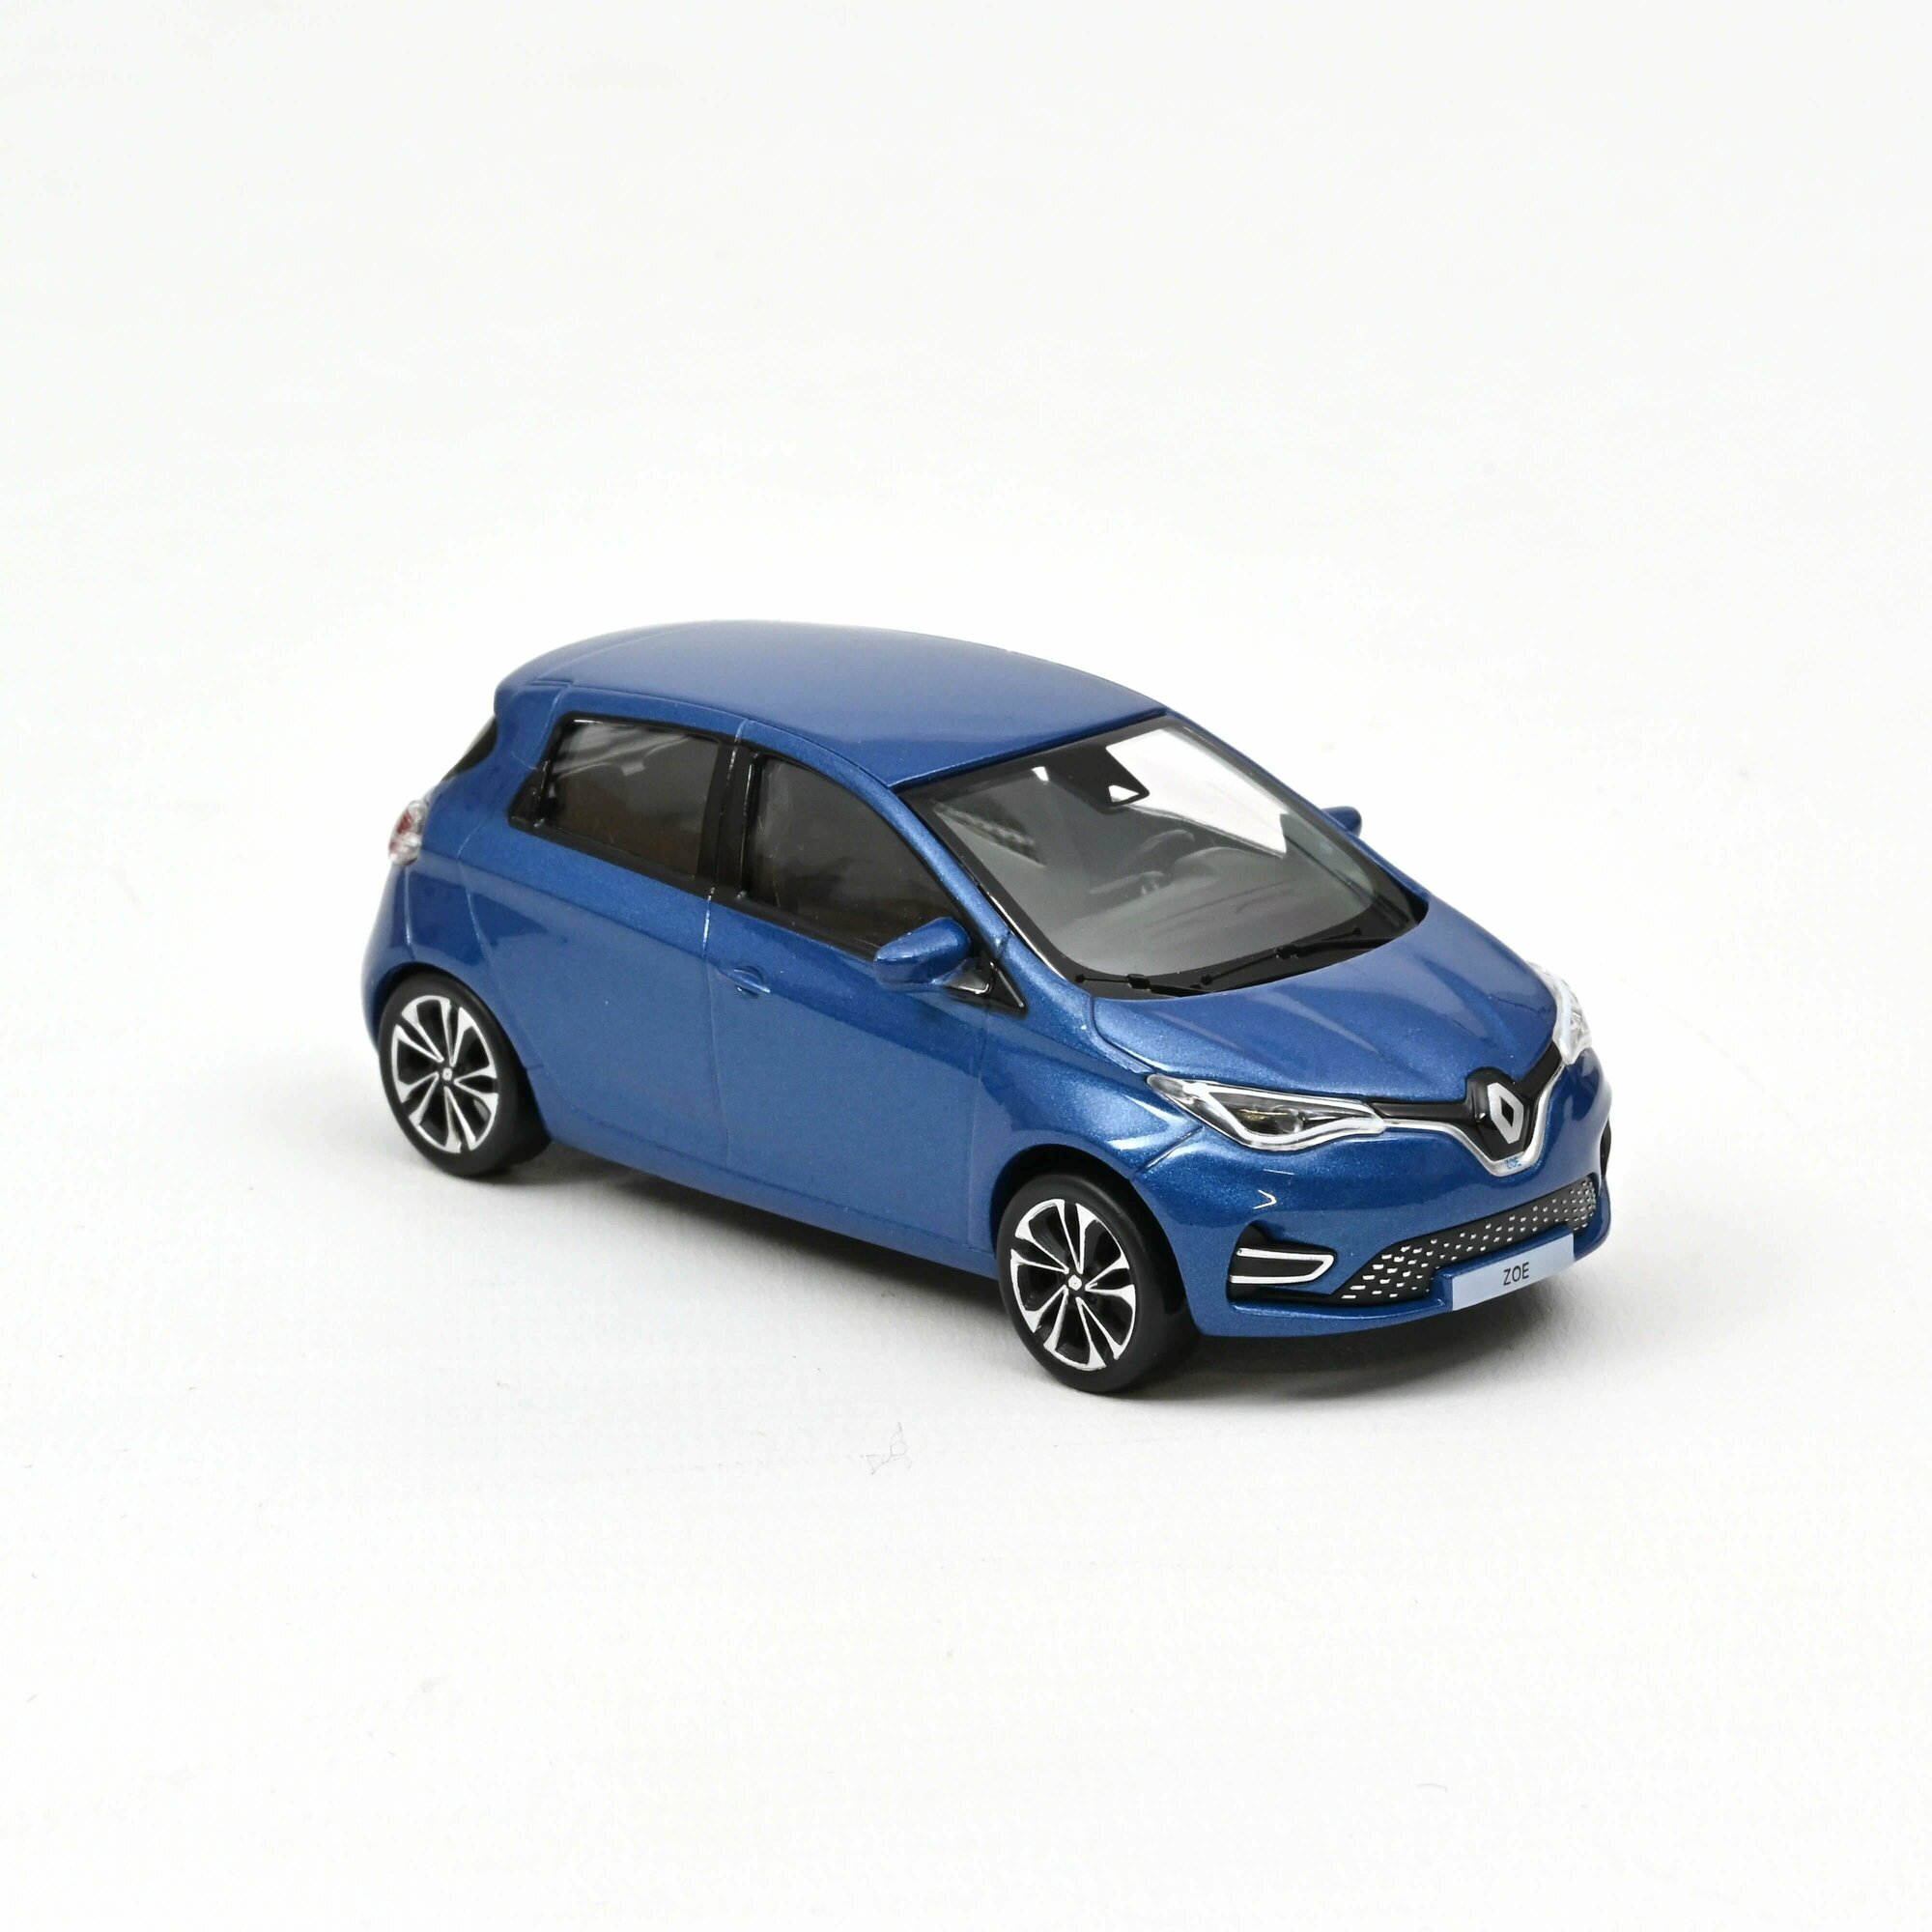 Renault Zoe 2020 Thunder Blue (синий), масштабная модель коллекционная